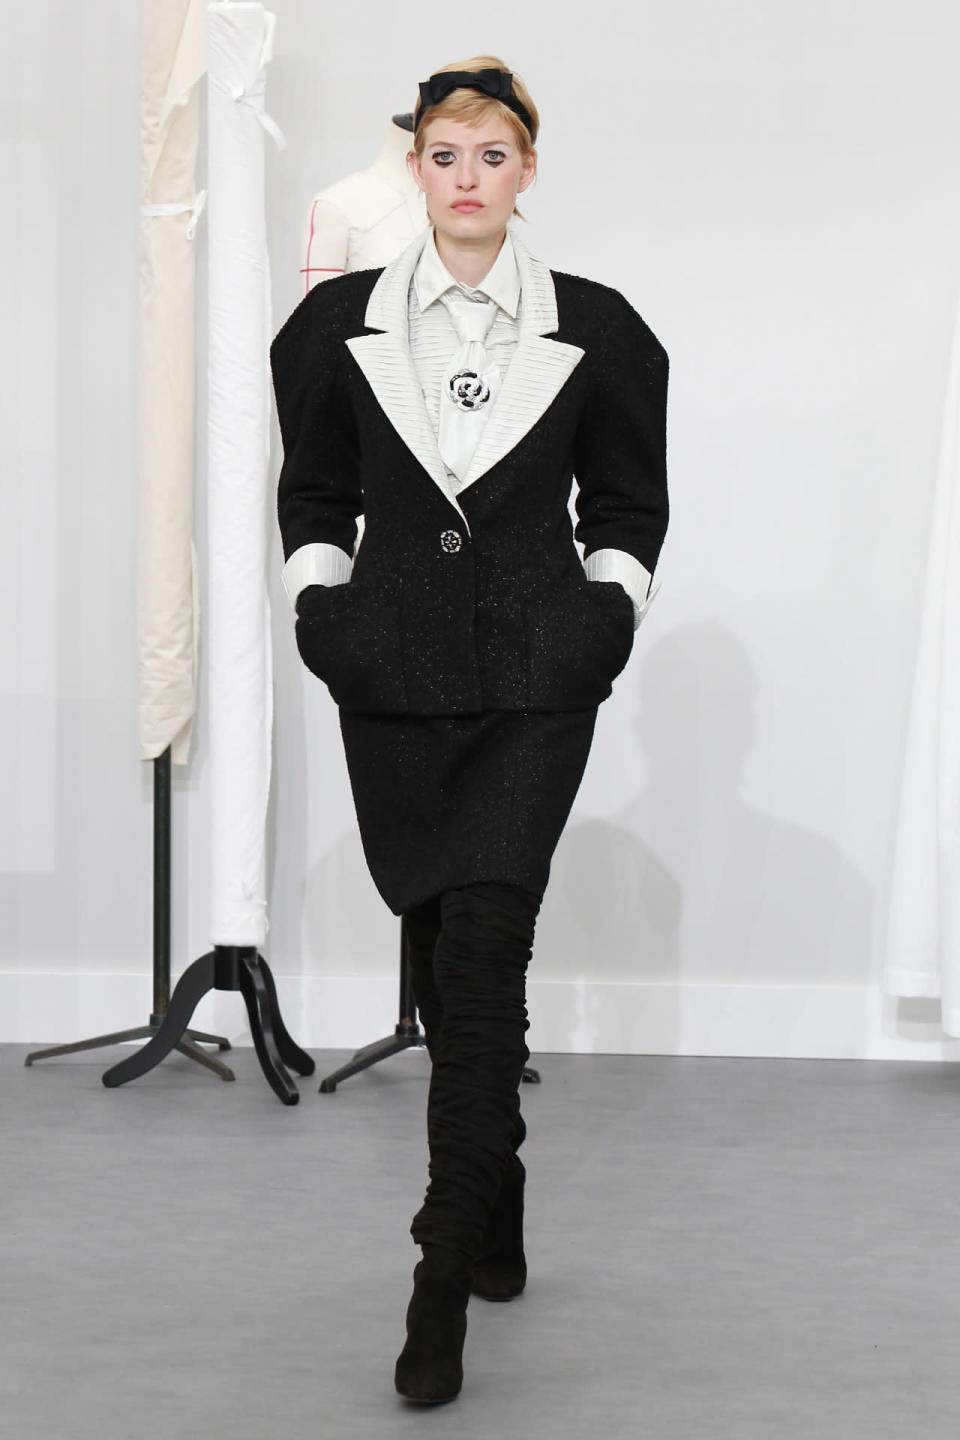 C’est la pièce qui tranche avec l’allure Chanel classique : la veste de tailleur déstructurée aux épaules.